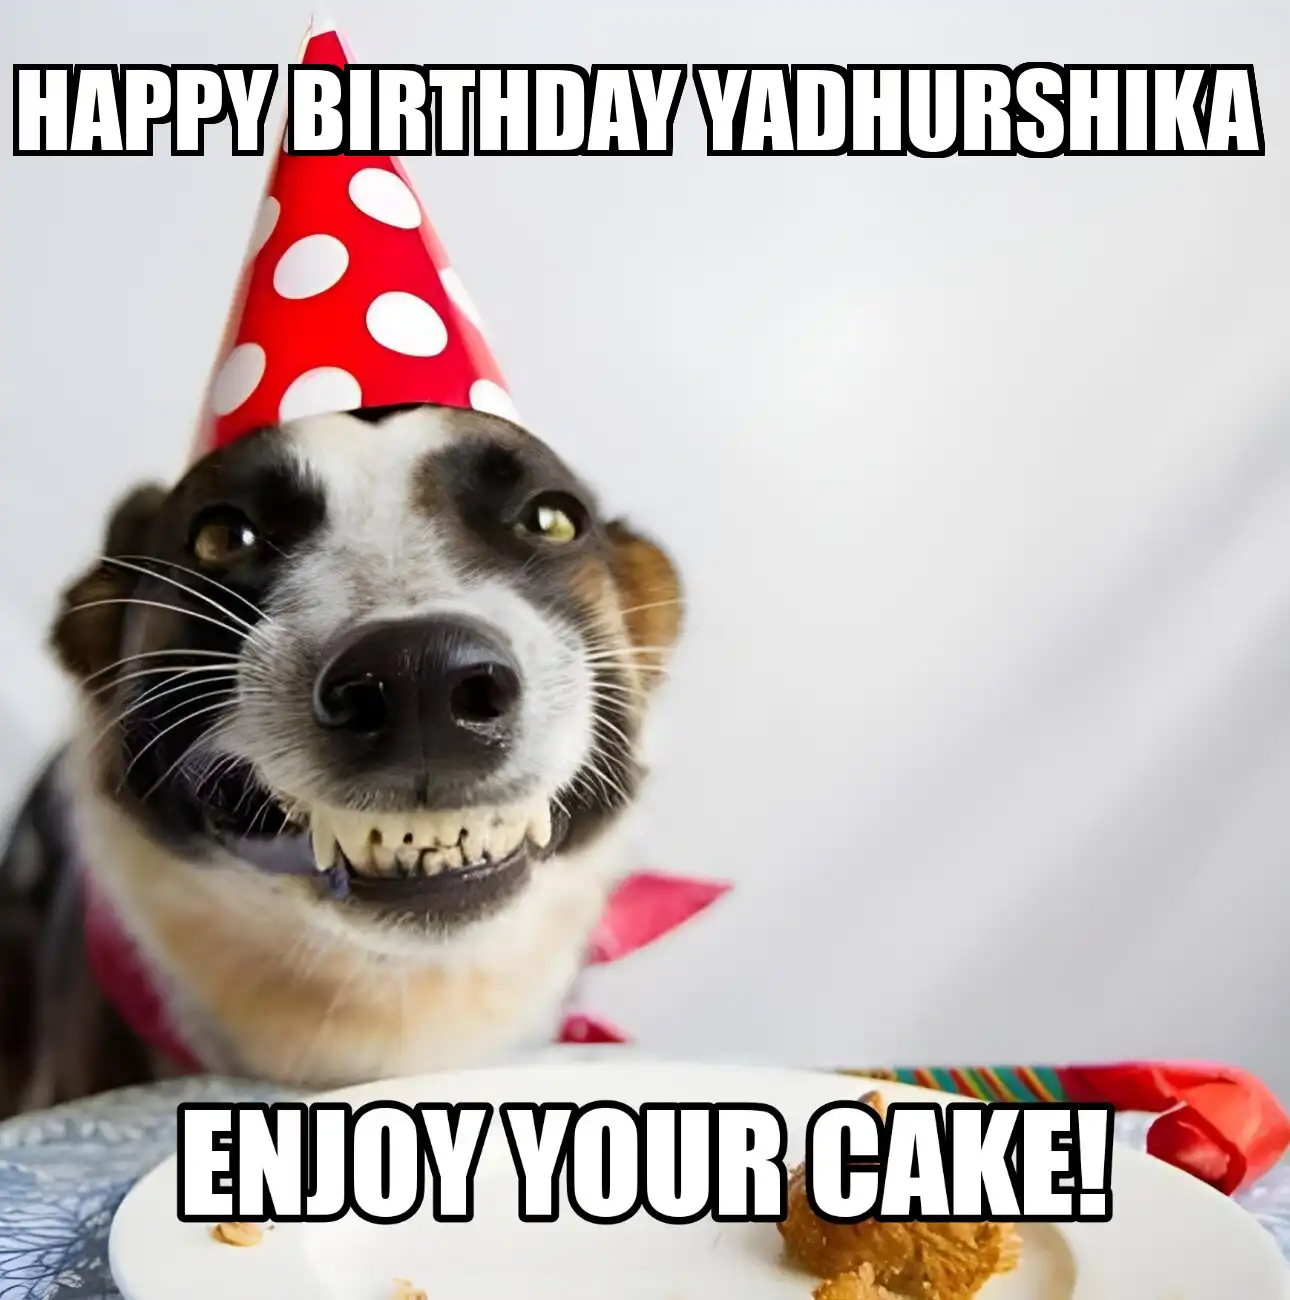 Happy Birthday Yadhurshika Enjoy Your Cake Dog Meme